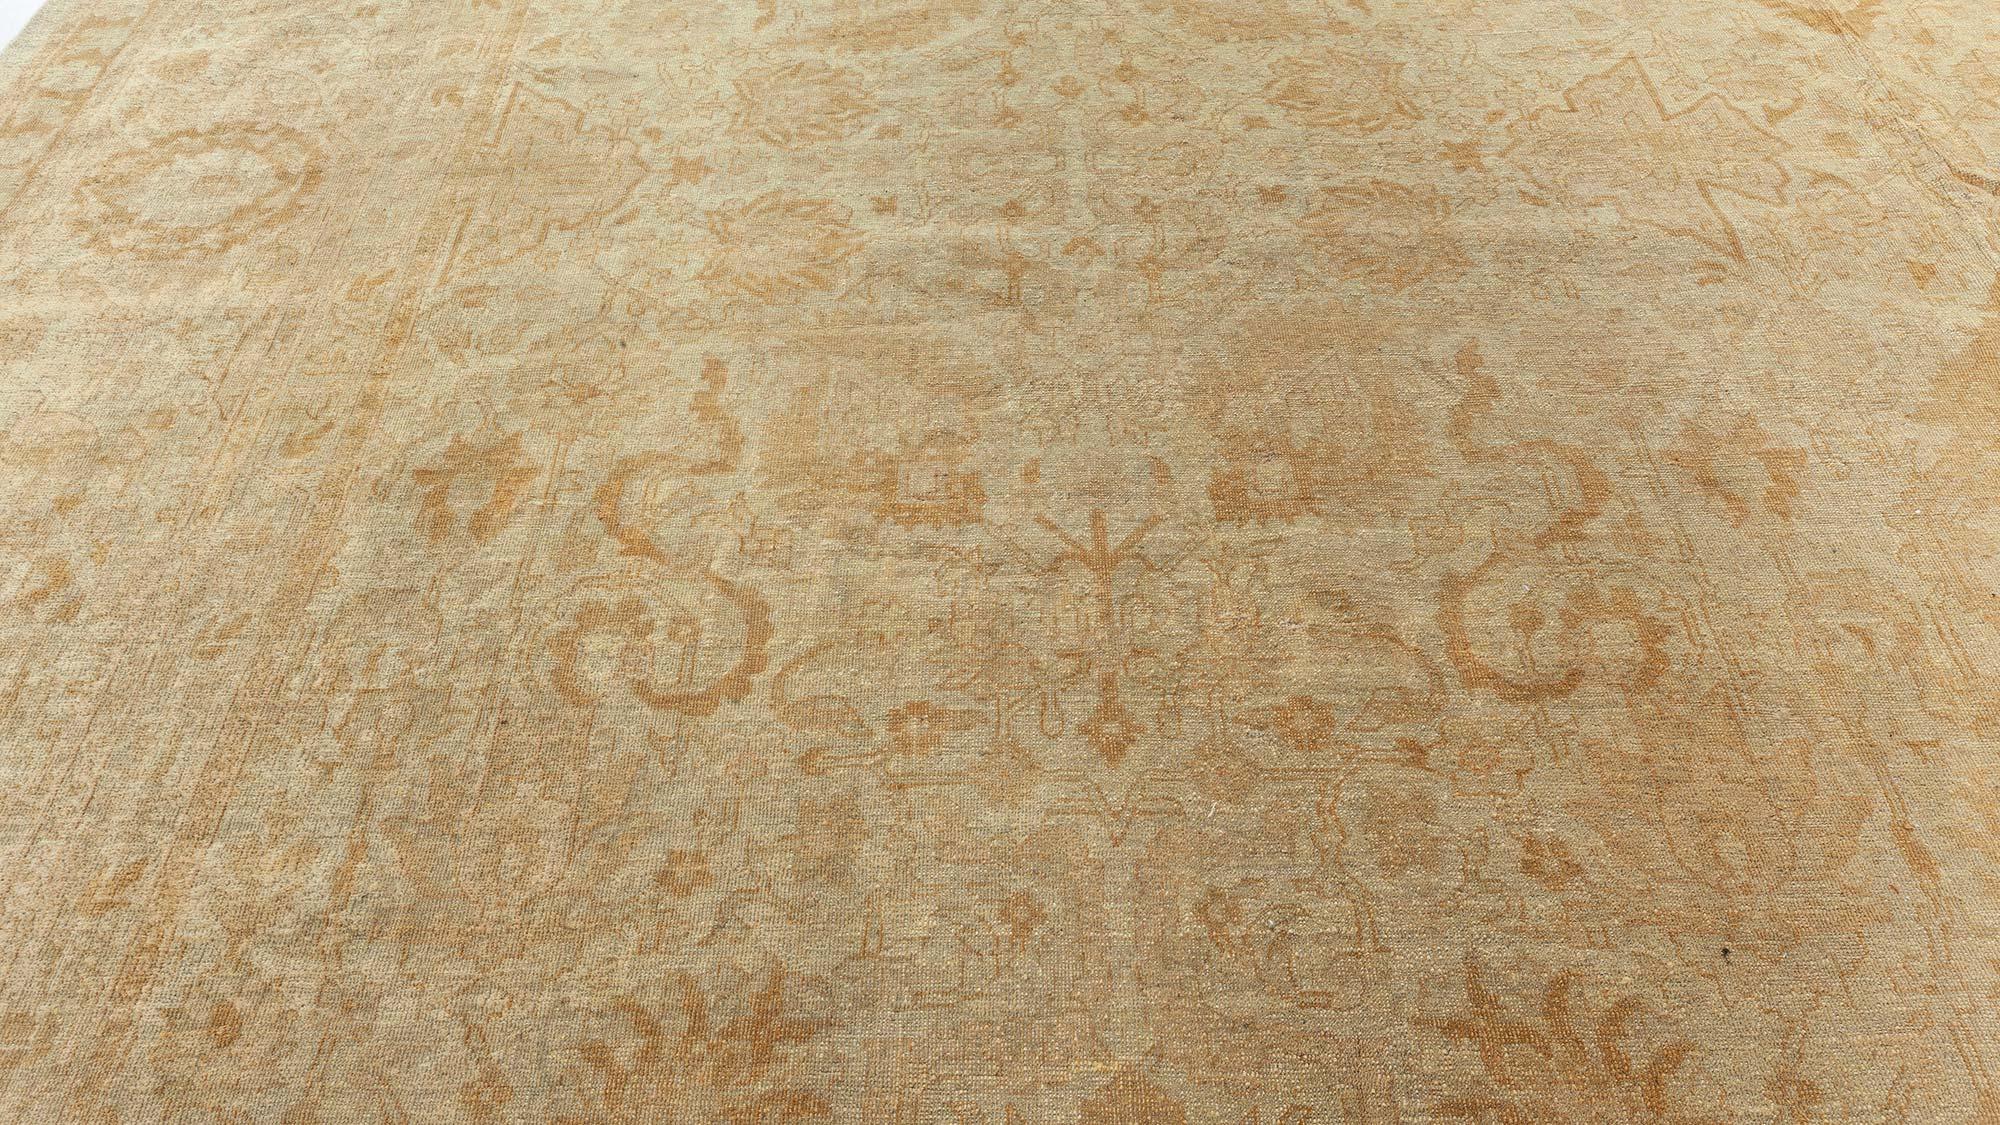 amritsar rug